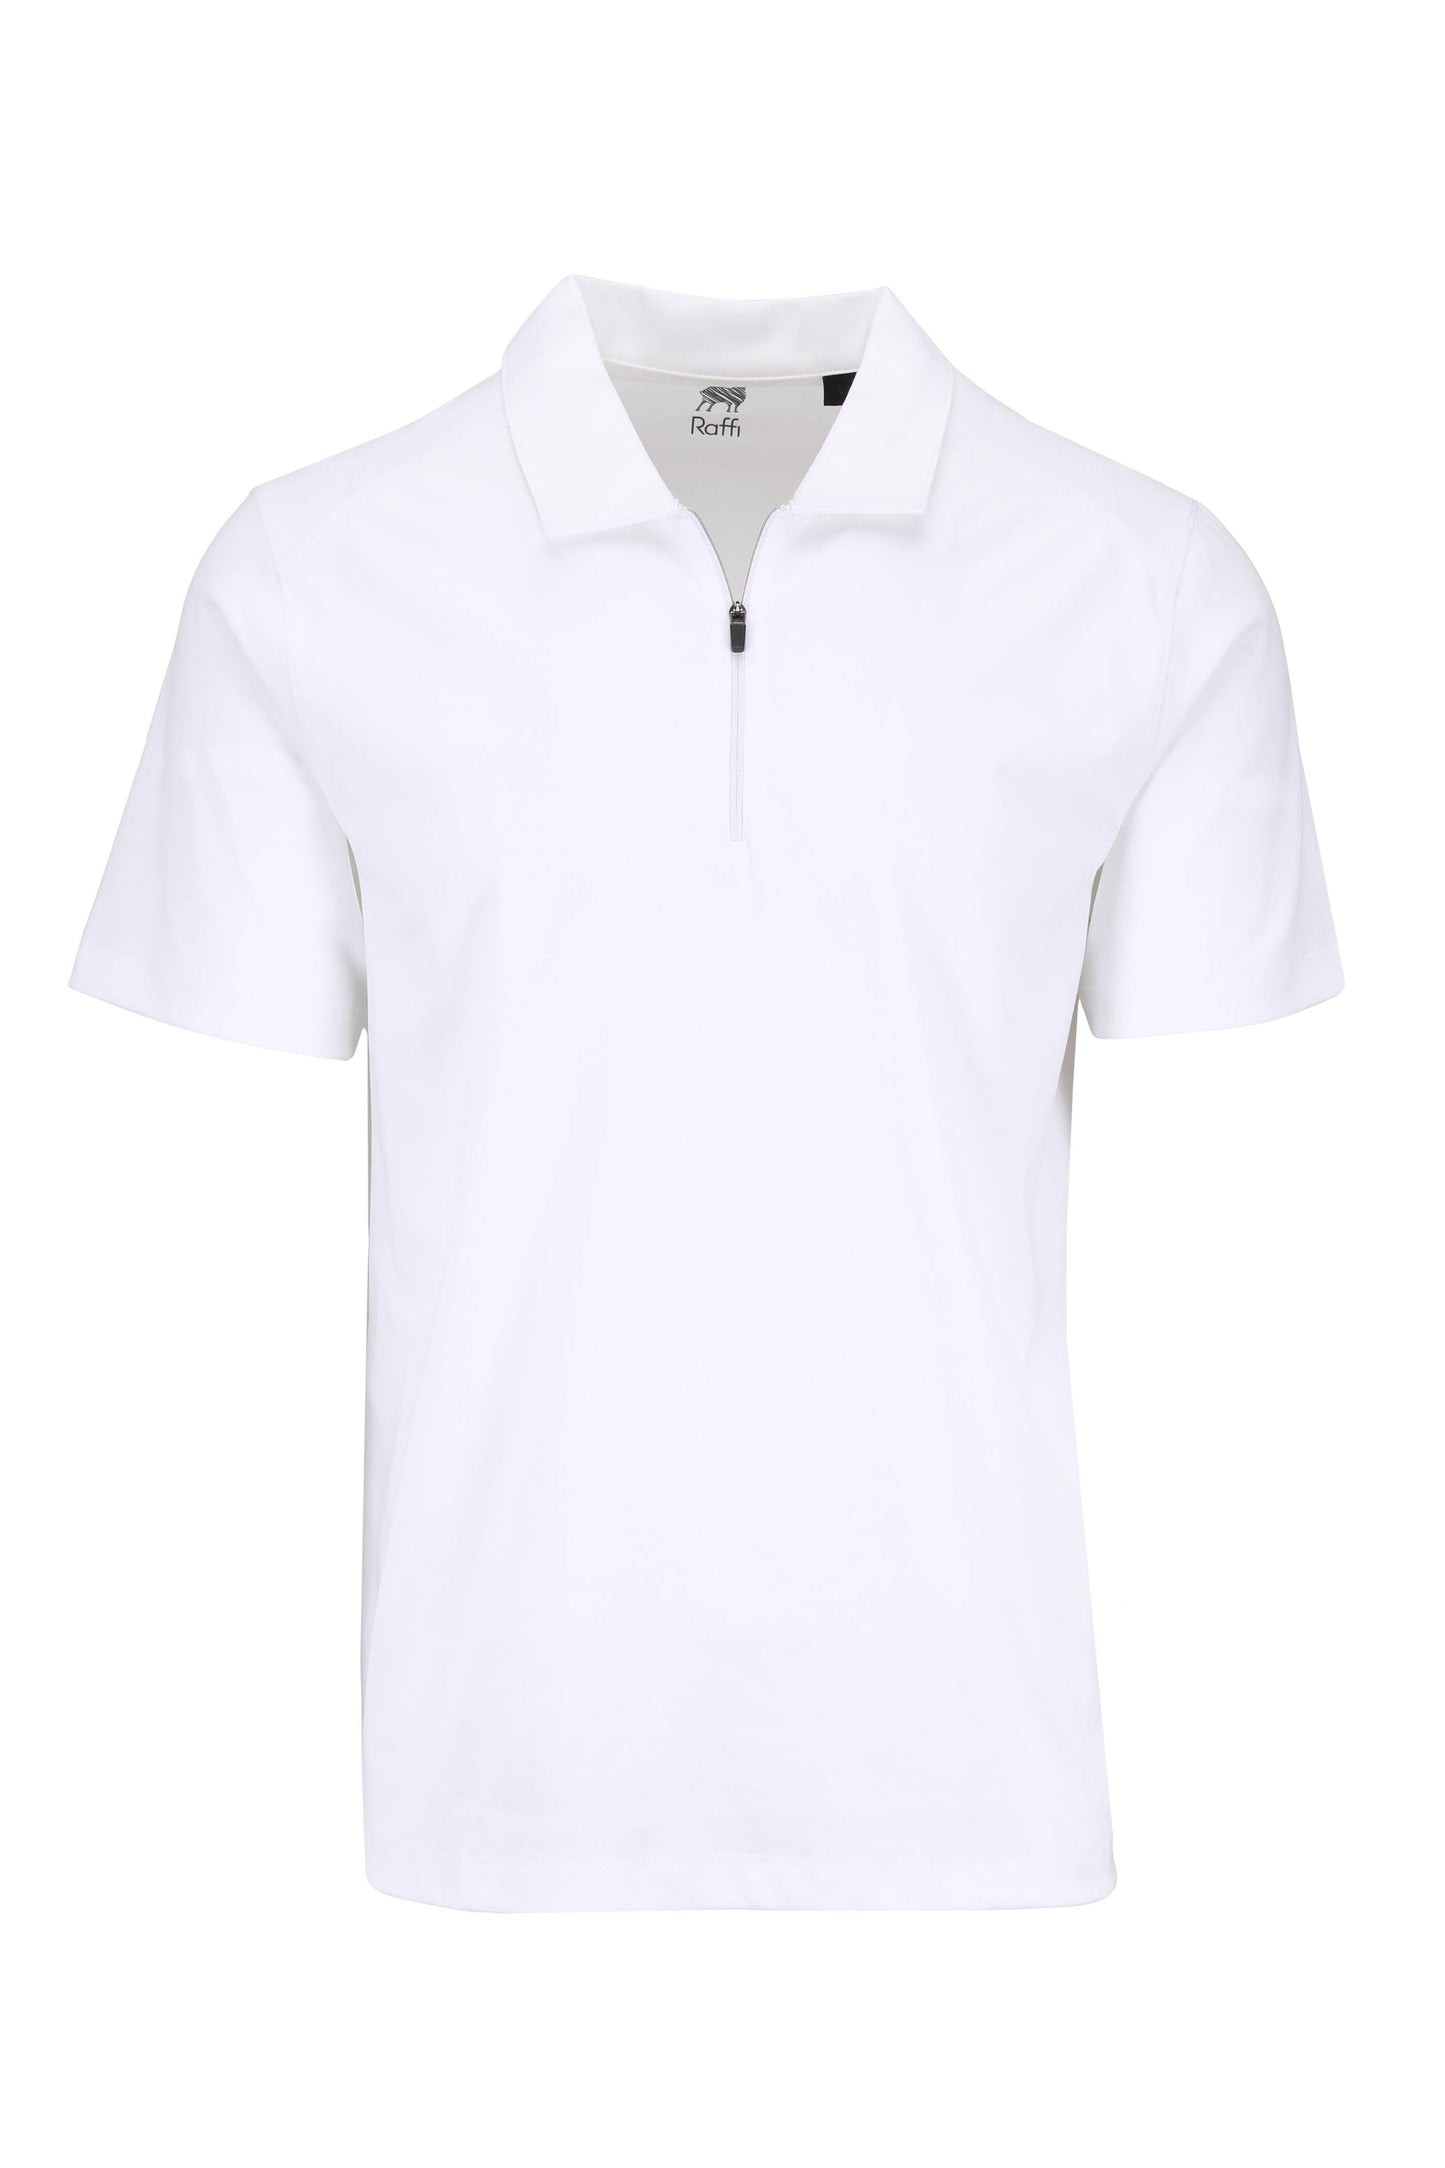 Raffi White Quarter-Zip Short Sleeve Polo